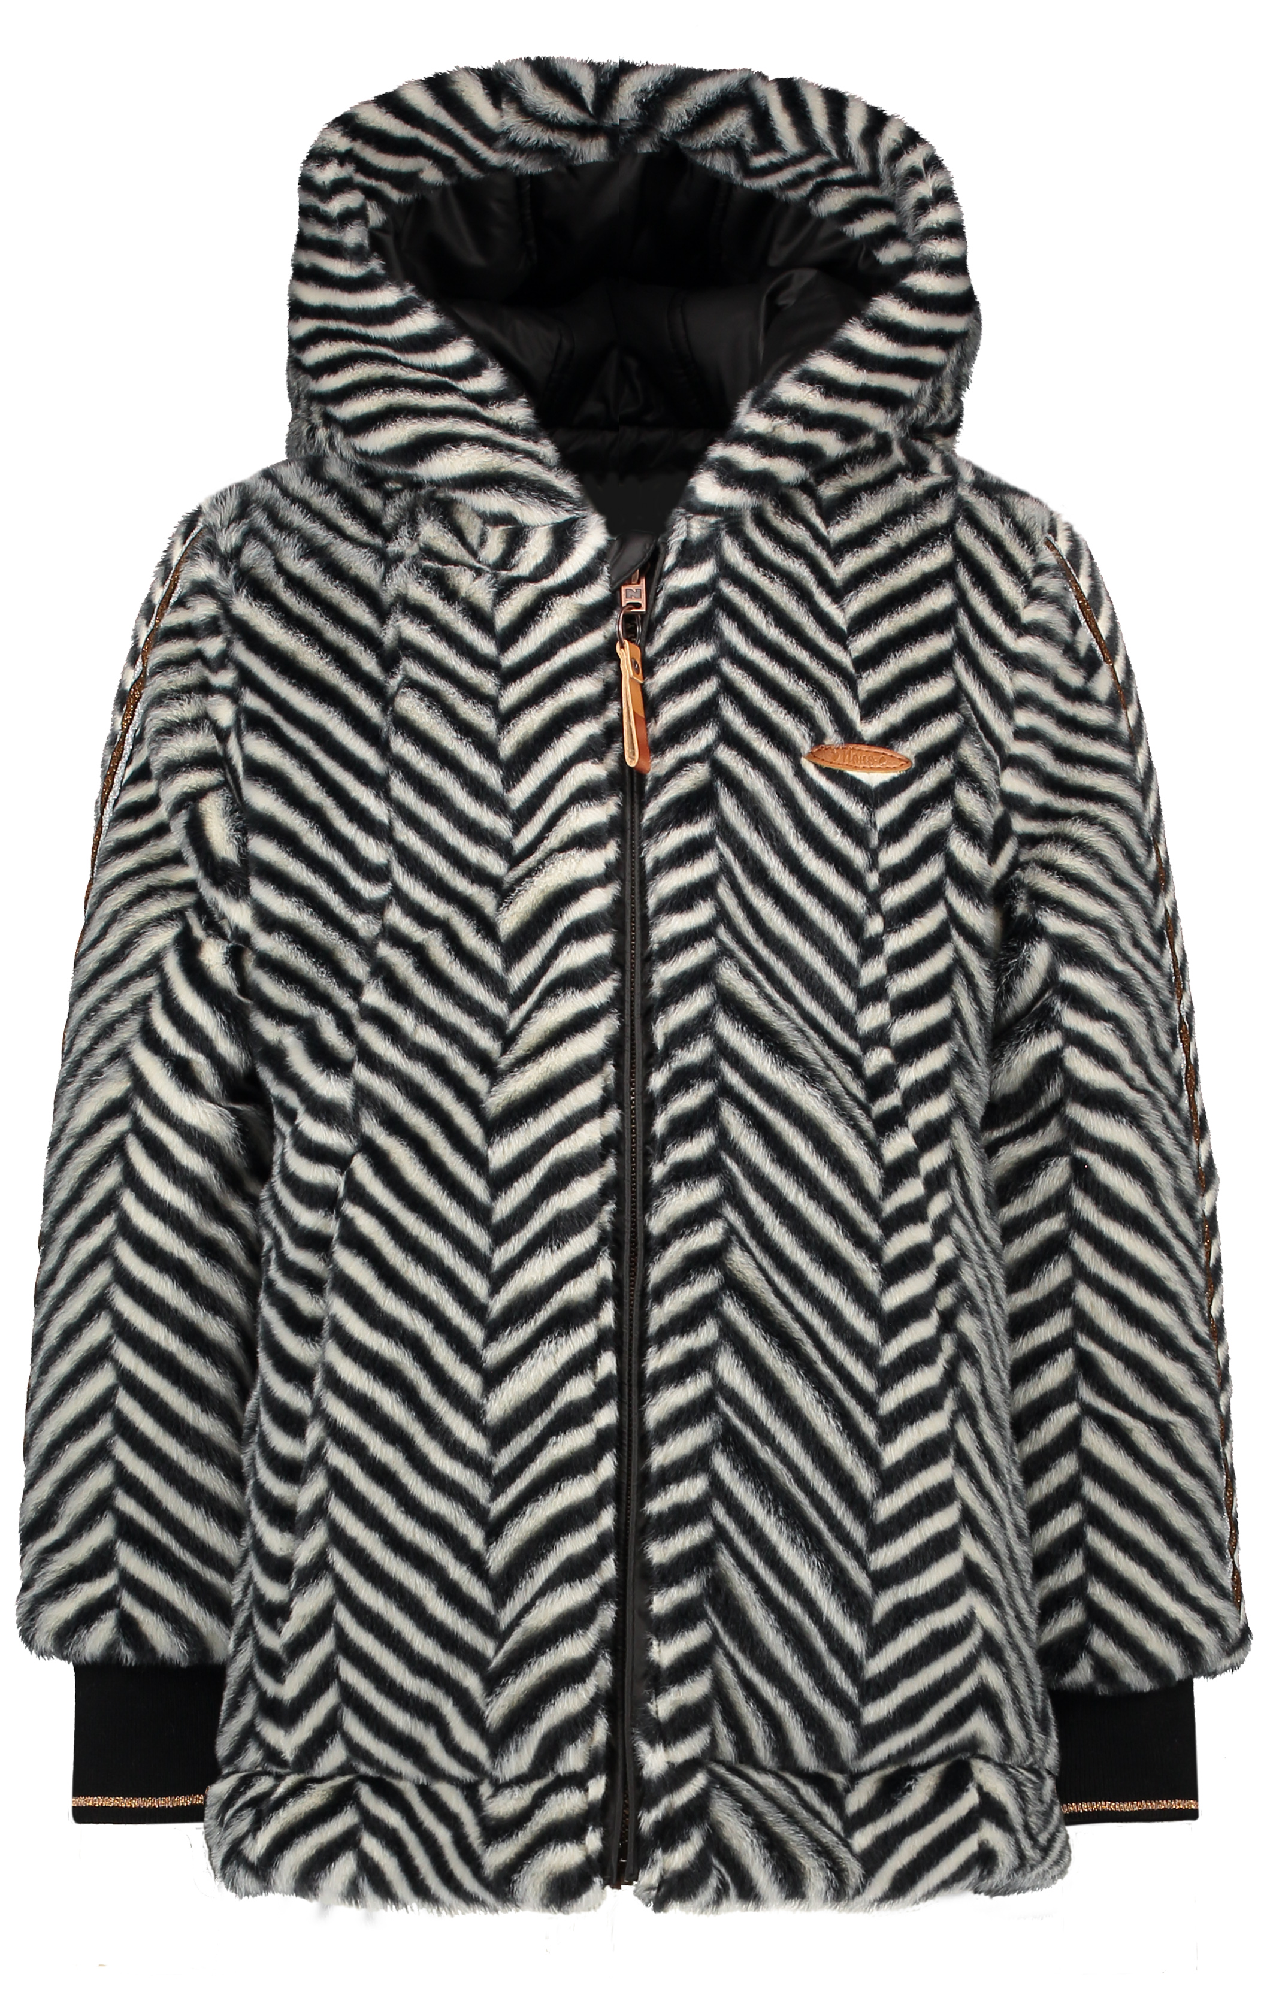 Meisjes Bria Reversible long jacket zigzag fur with hood van NoNo in de kleur Zwart in maat 116.